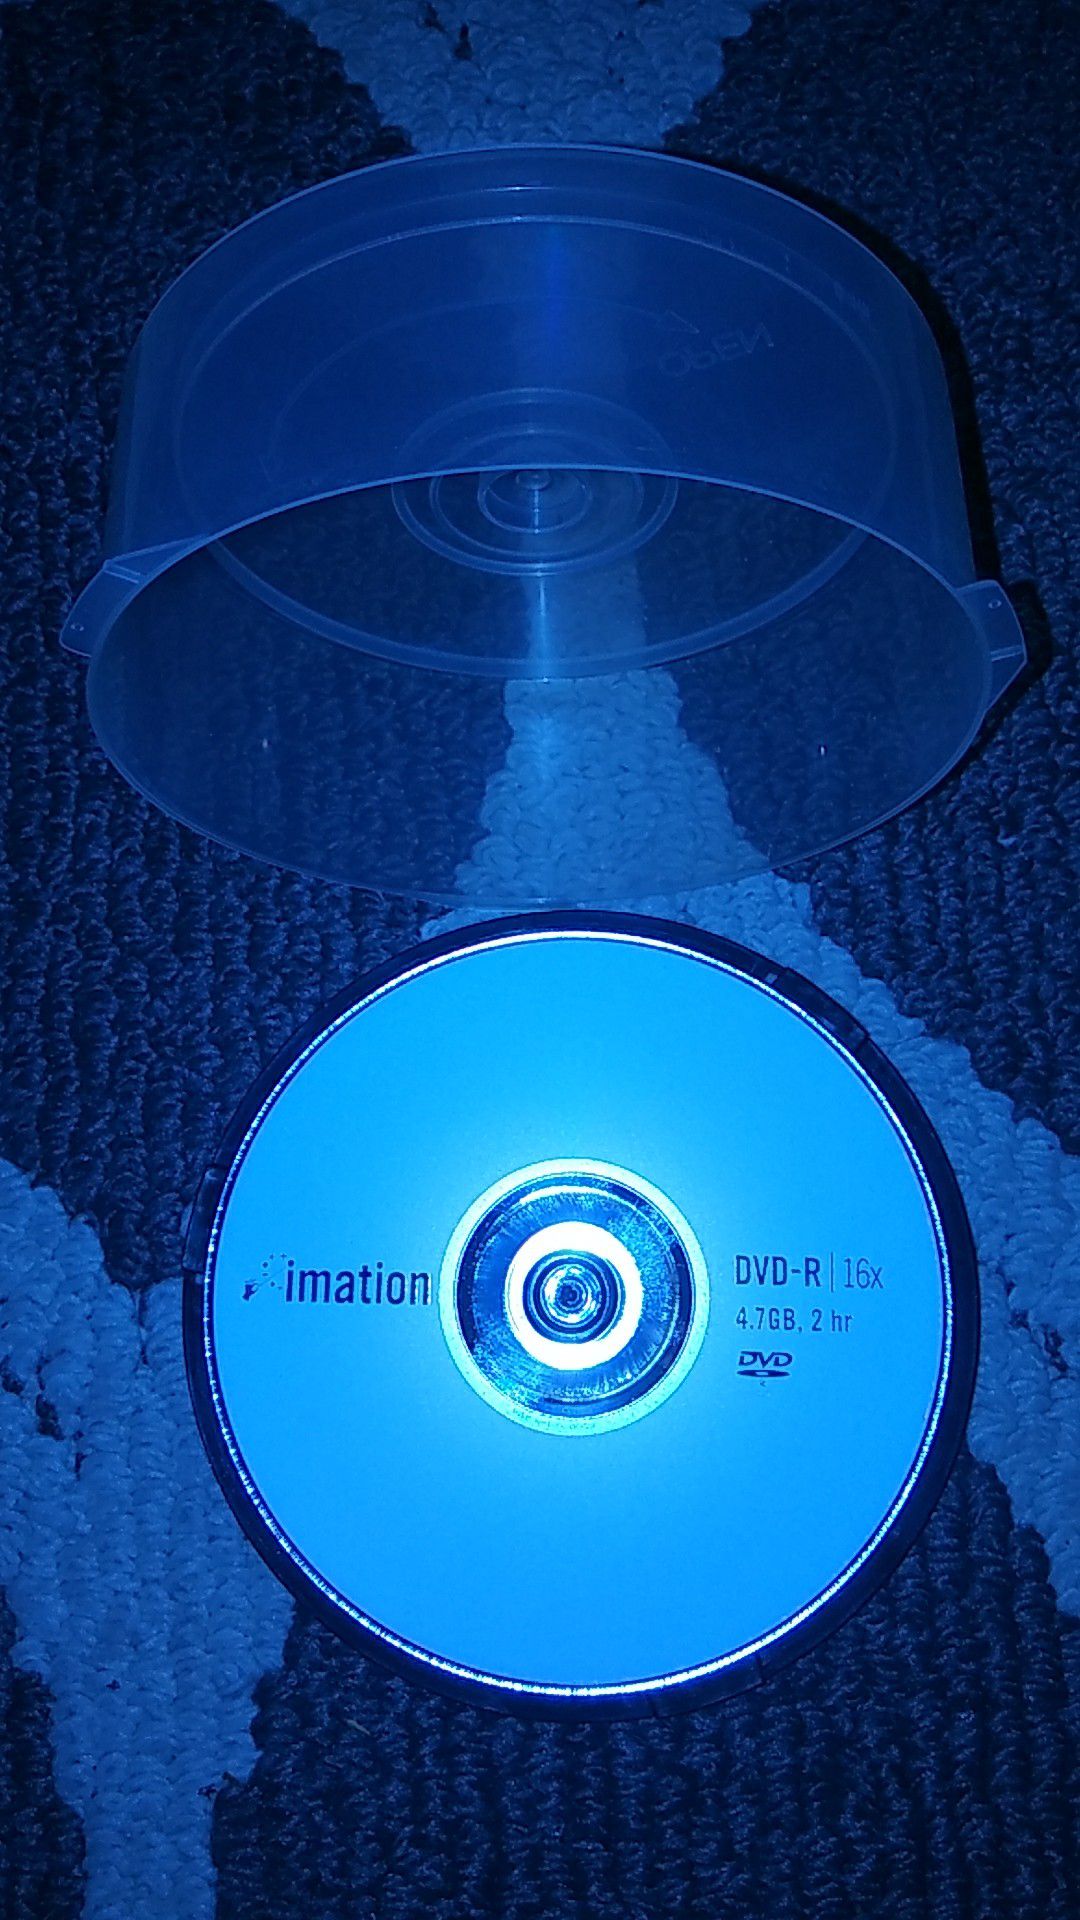 14 BLANK IMATION DVD-R 16x 4.7GB, 2 HR